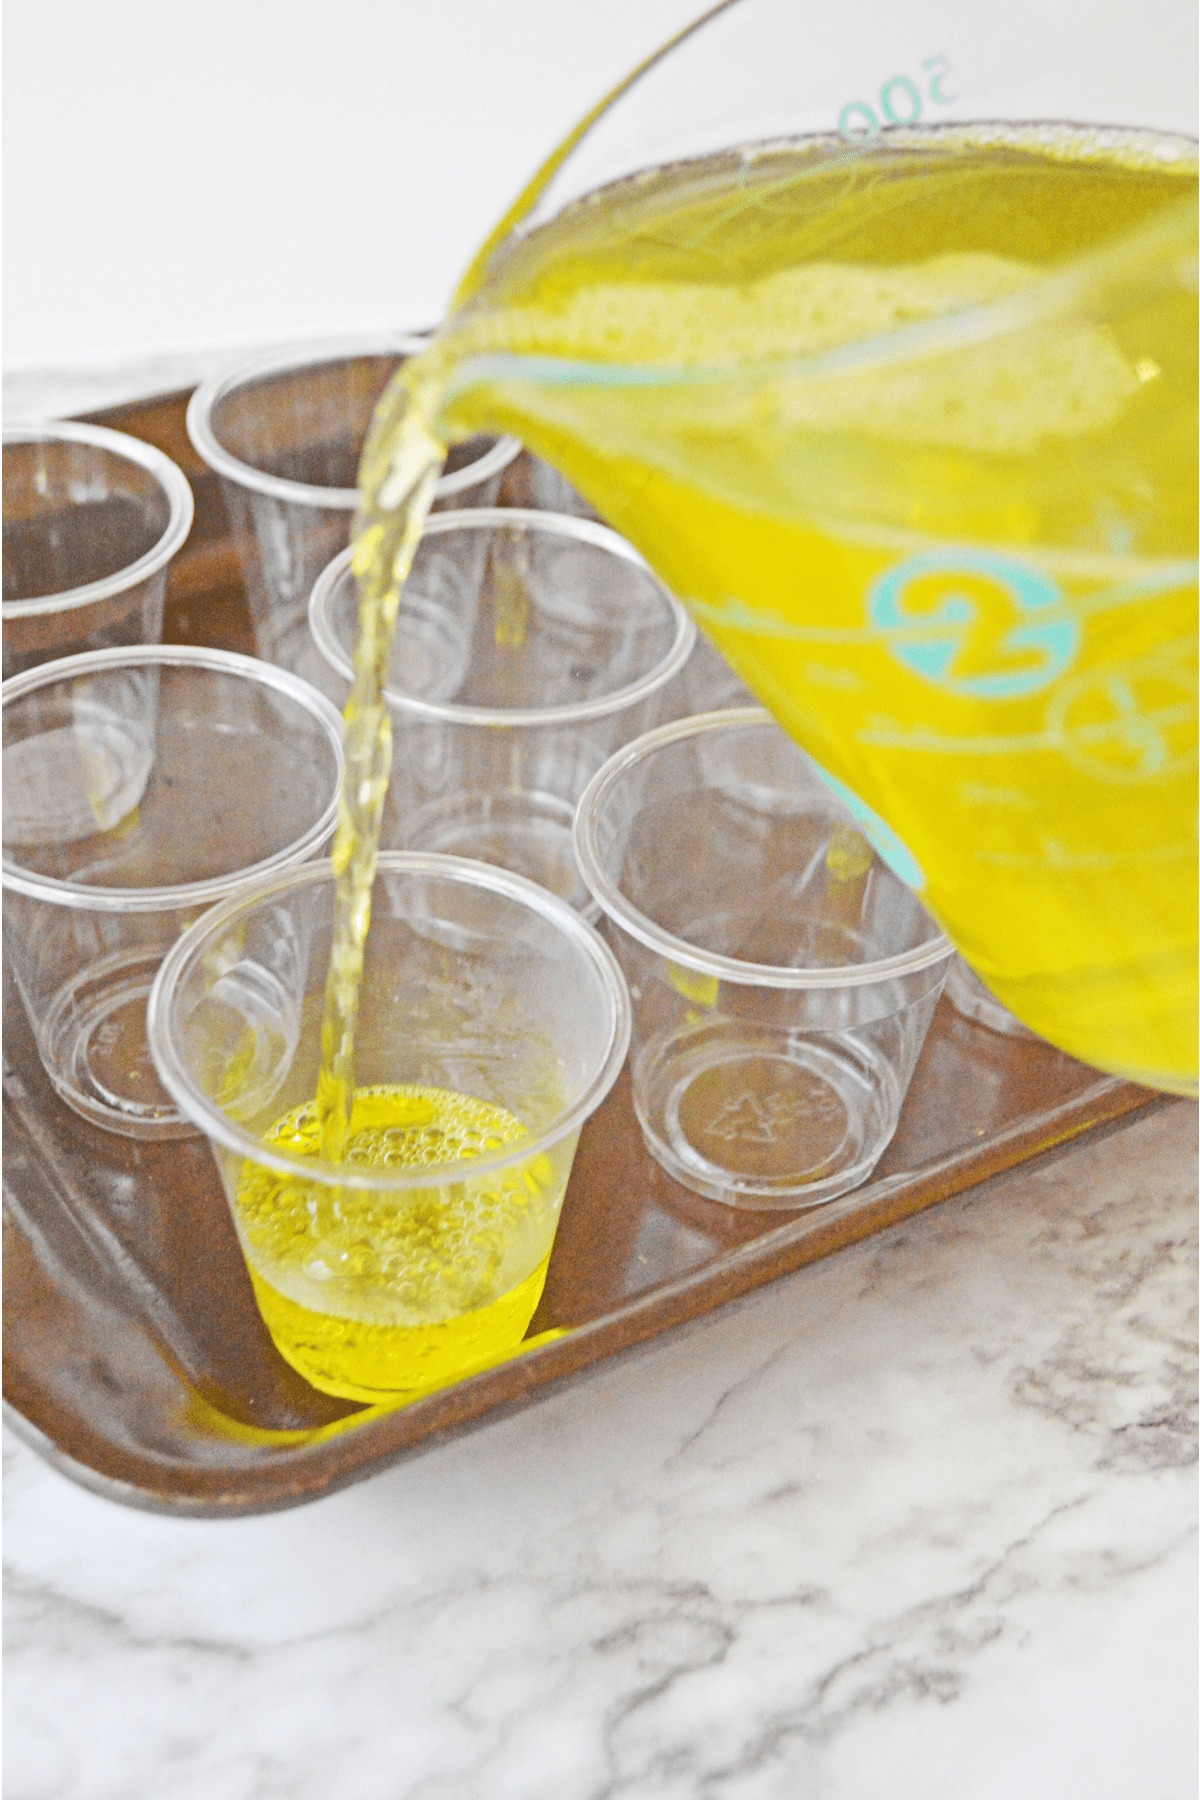 Lemon jello mixture poured into plastic shot cups